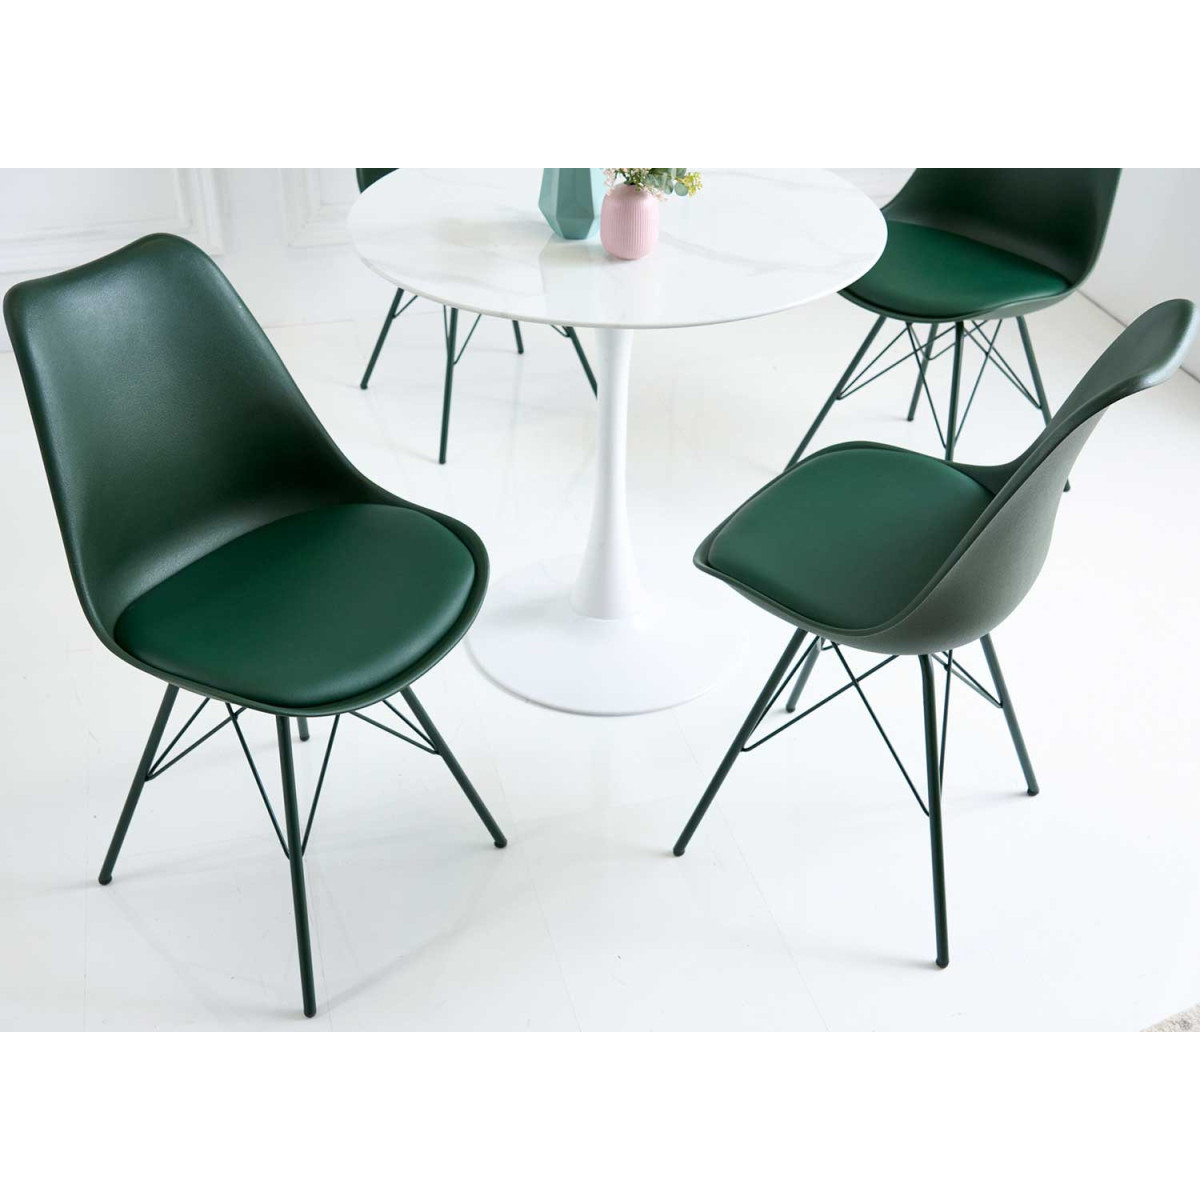 Chaise design DOGA, structure 4 pieds, assise plastique monobloc couleur -  Lot de 6 pièces.